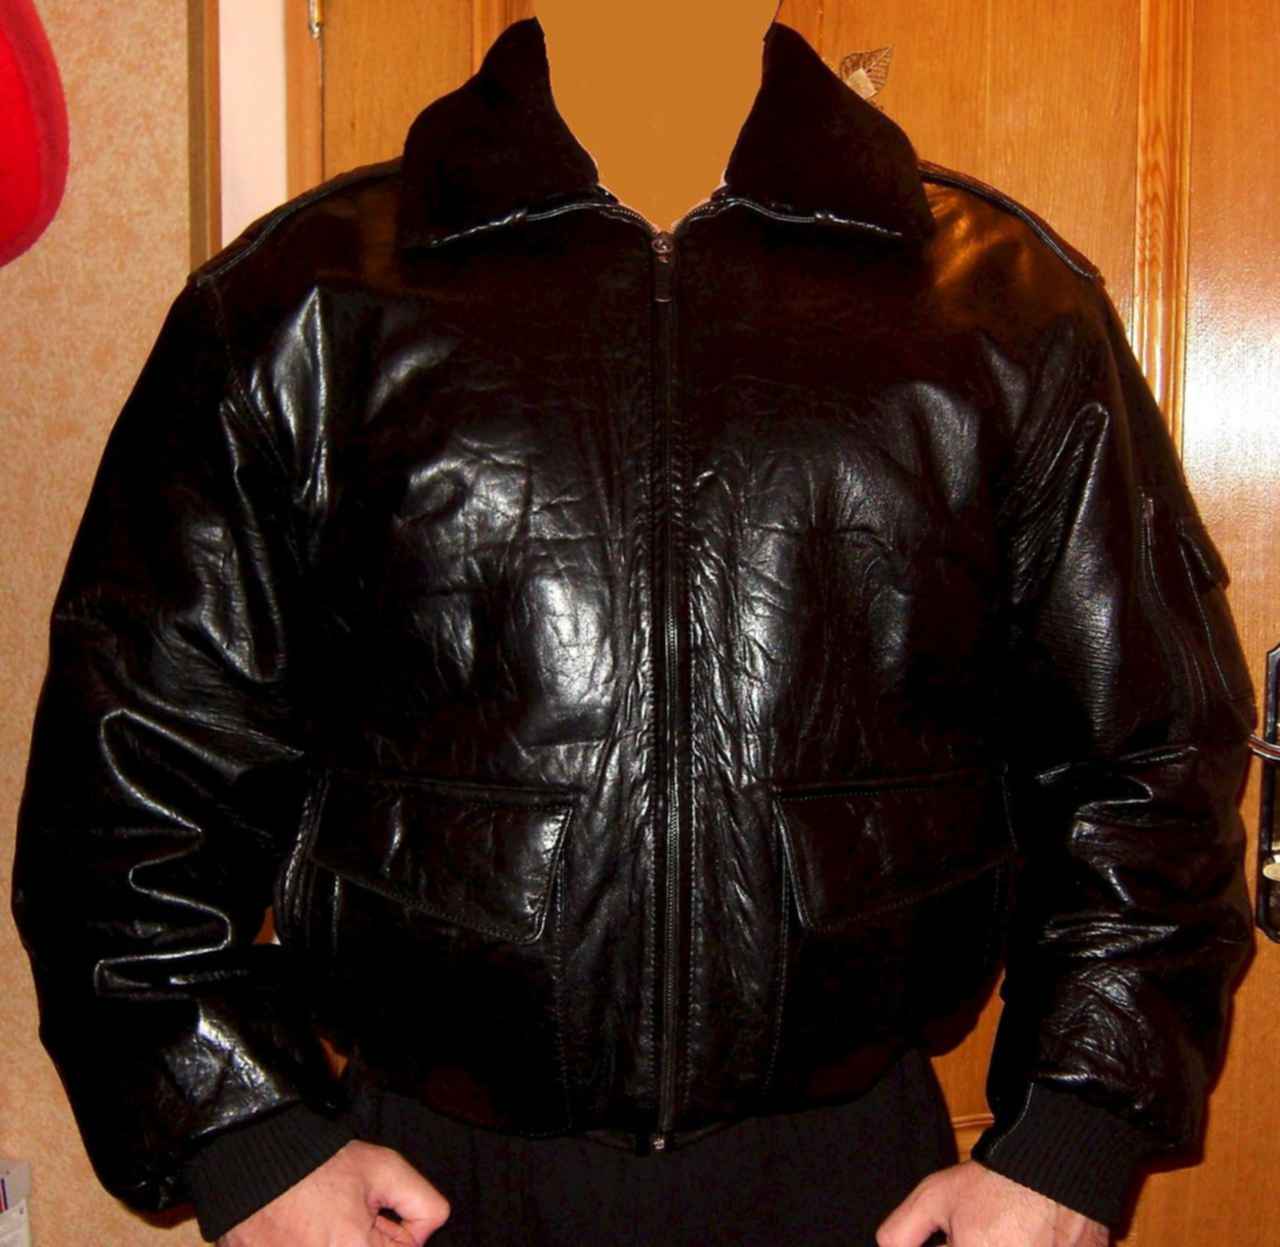 Авито мужские куртки б у. Куртка пилот ivagio. Куртка ivagio кожаная мужская Pilot. Куртка пилот кожаная мужская из 90. Кожаные куртки 1990.